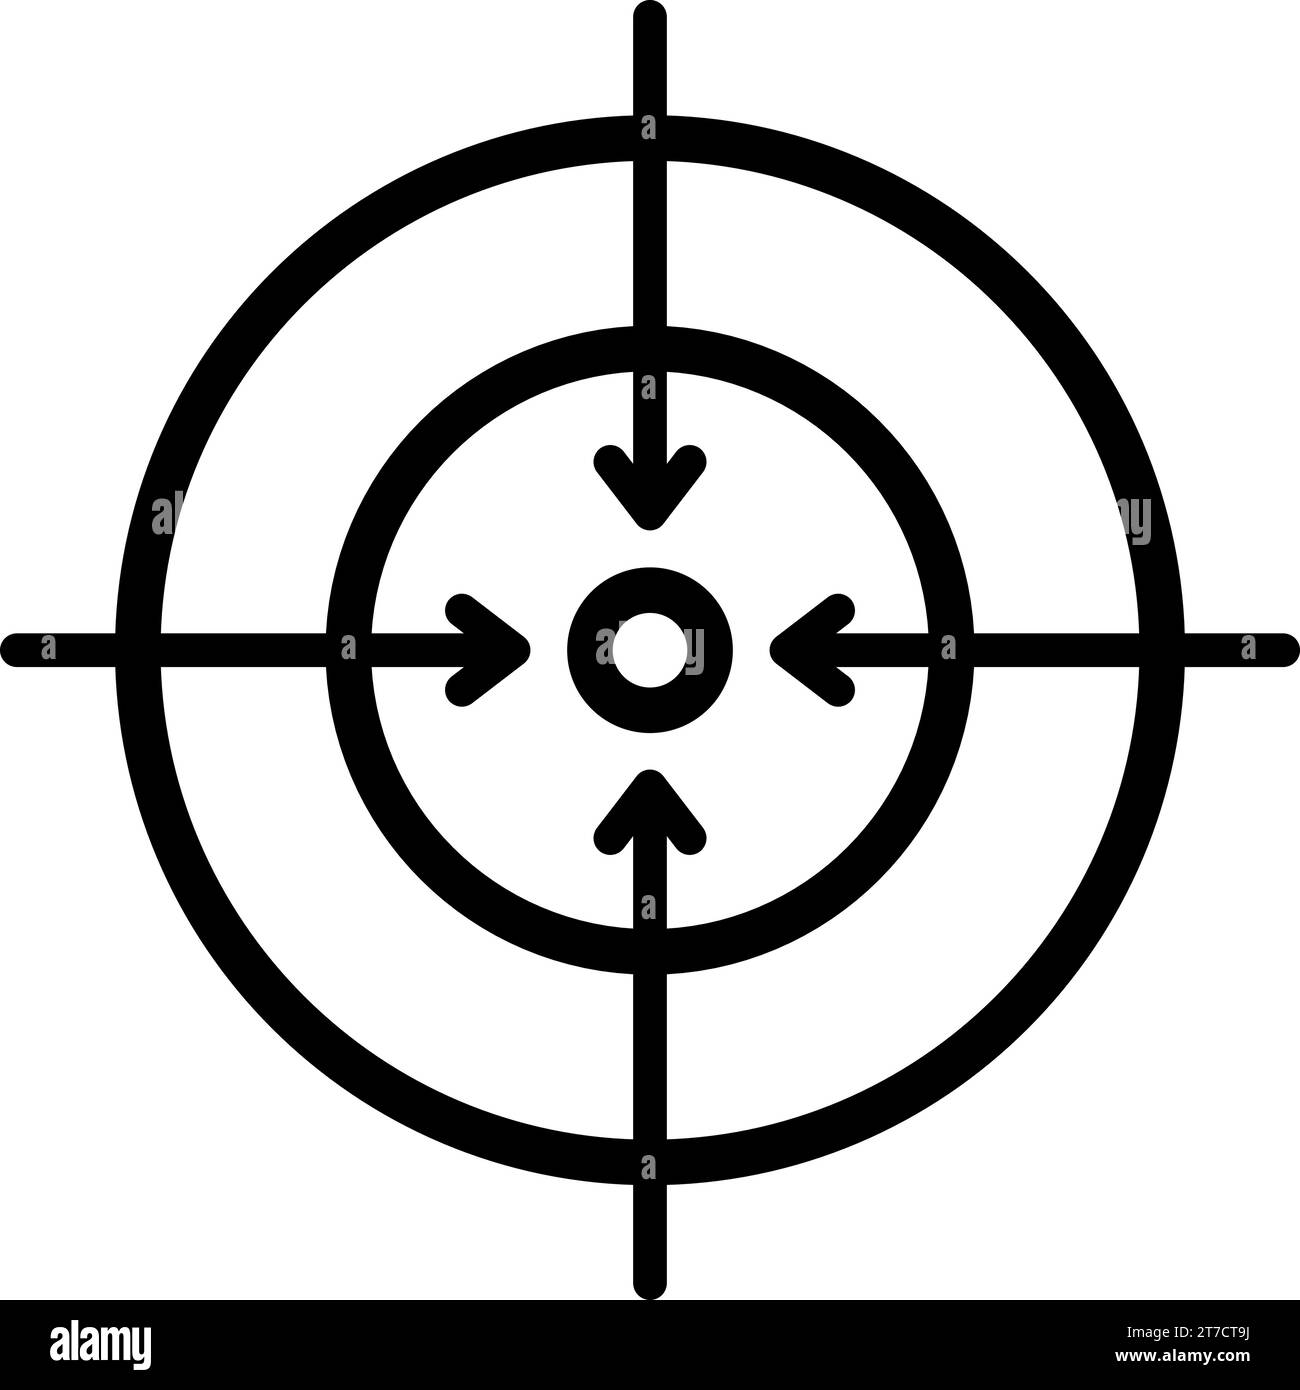 Icona lineare di un simbolo di destinazione come concetto di obiettivo o attenzione di messa a fuoco Illustrazione Vettoriale